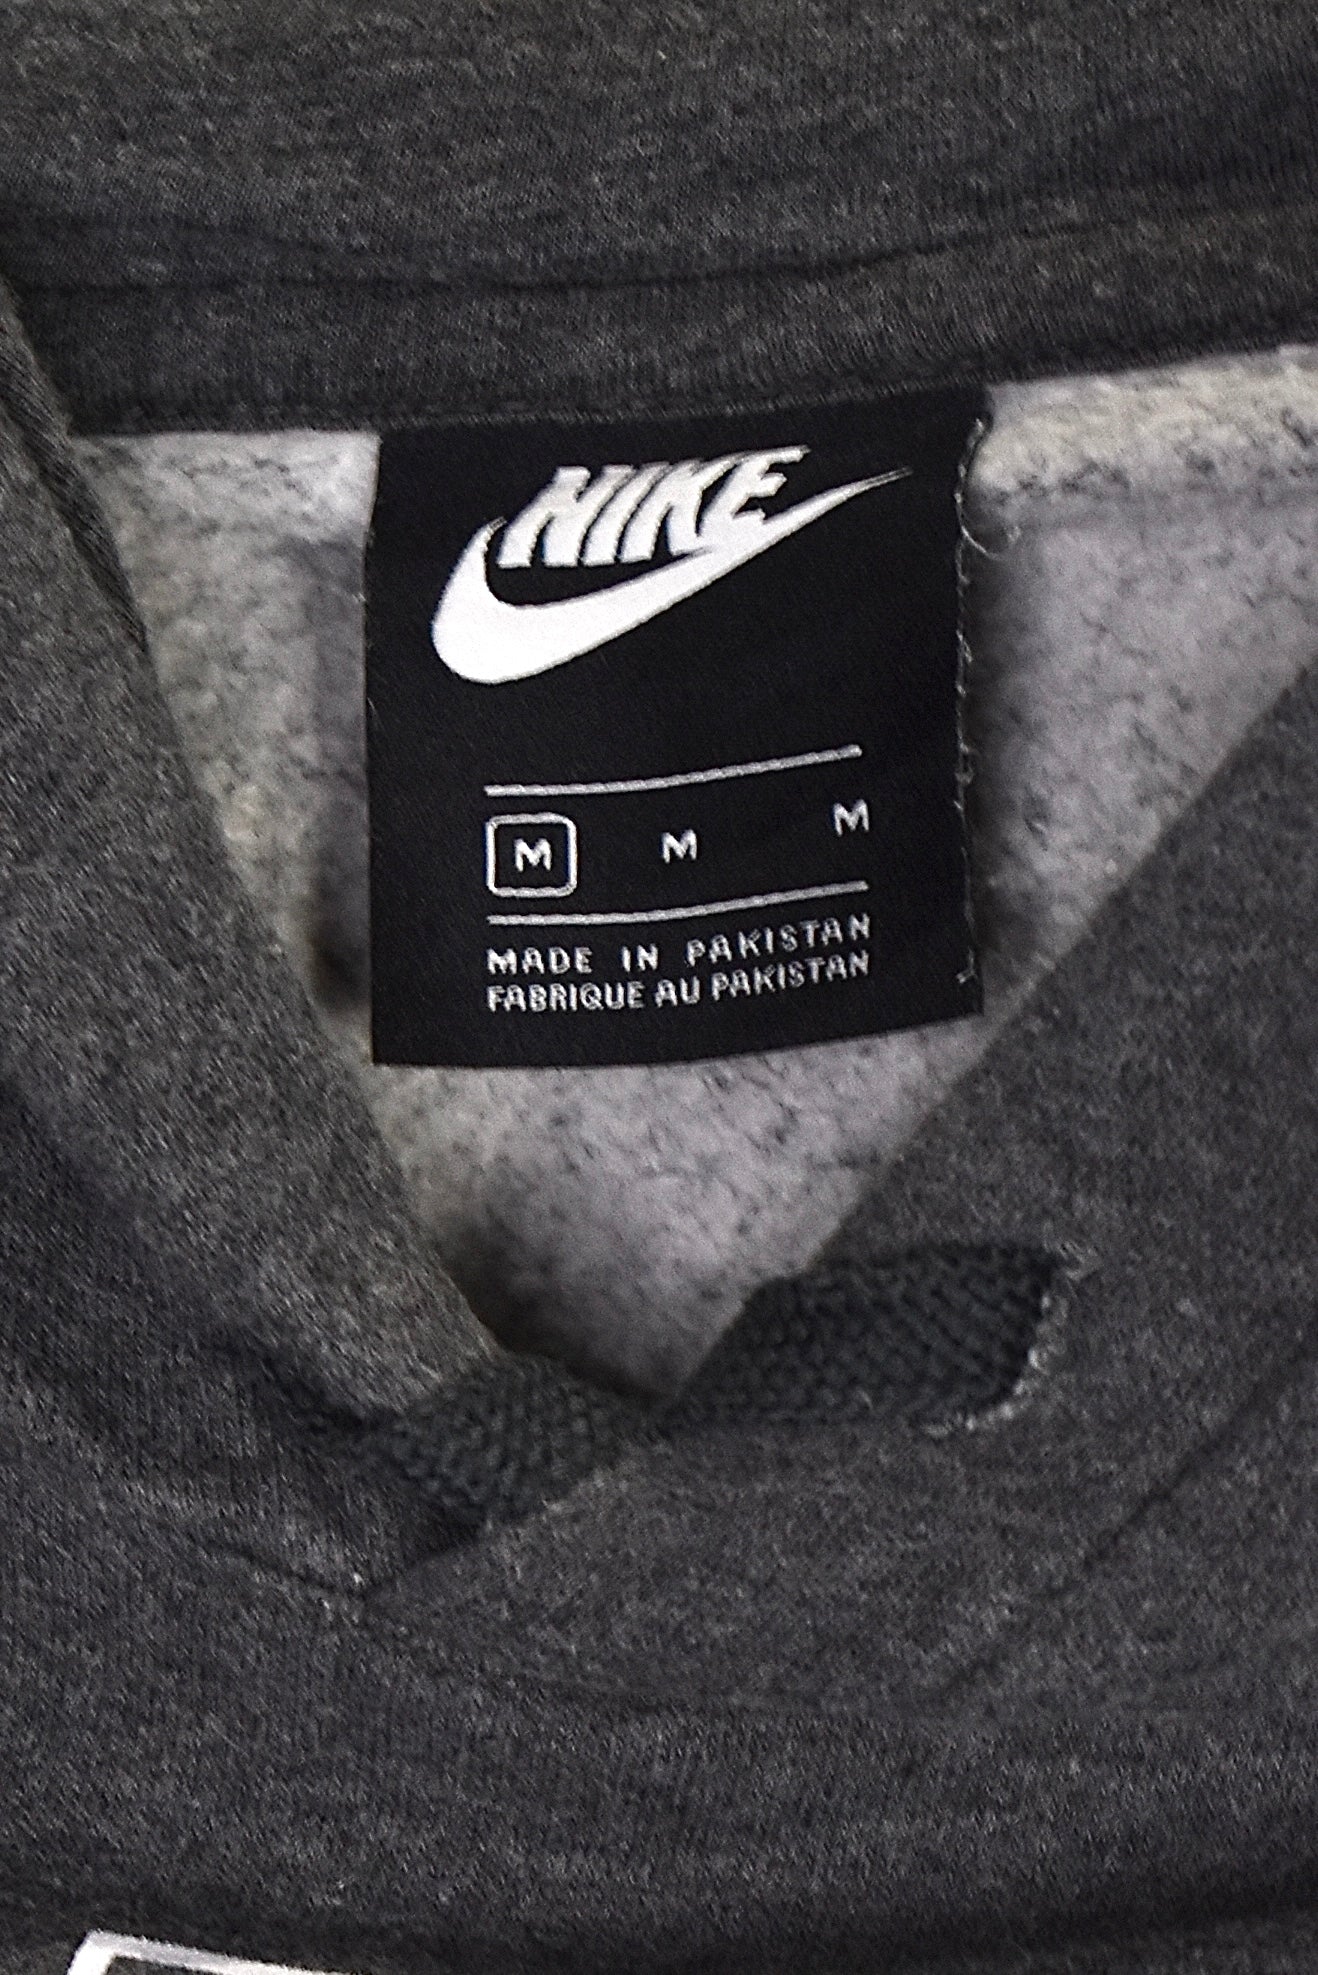 Modern Nike hoodie (L), grey graphic sweatshirt